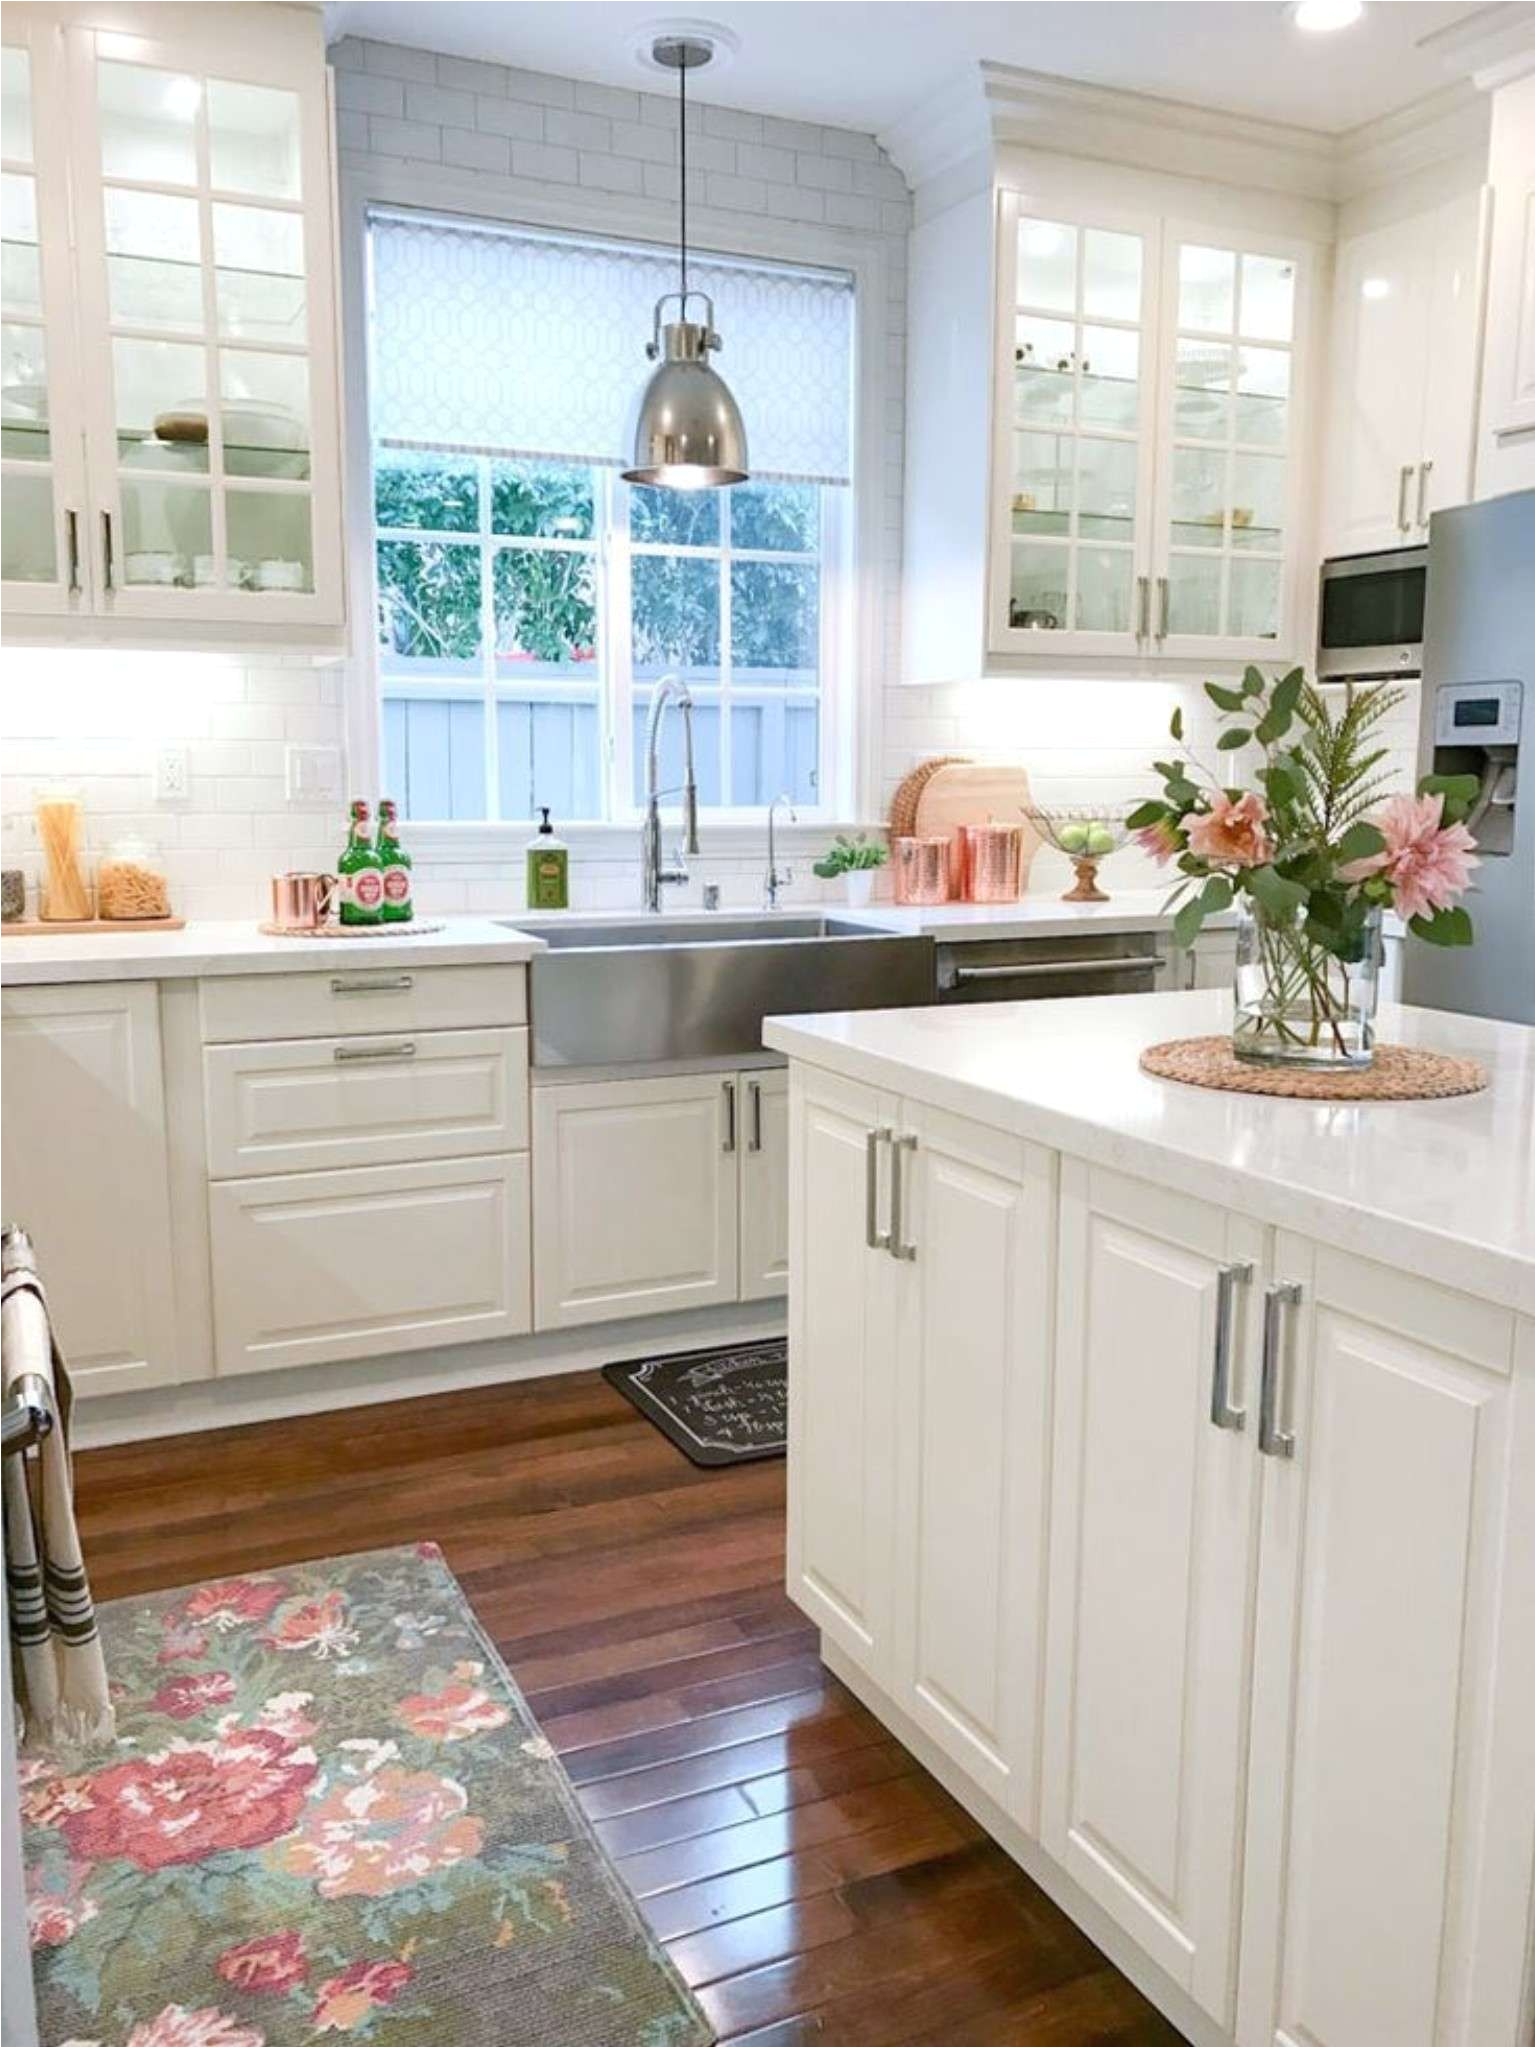 elegant blue and grey kitchen decor kitchen cabinets fresh kitchen cabinet 0d bright lights design